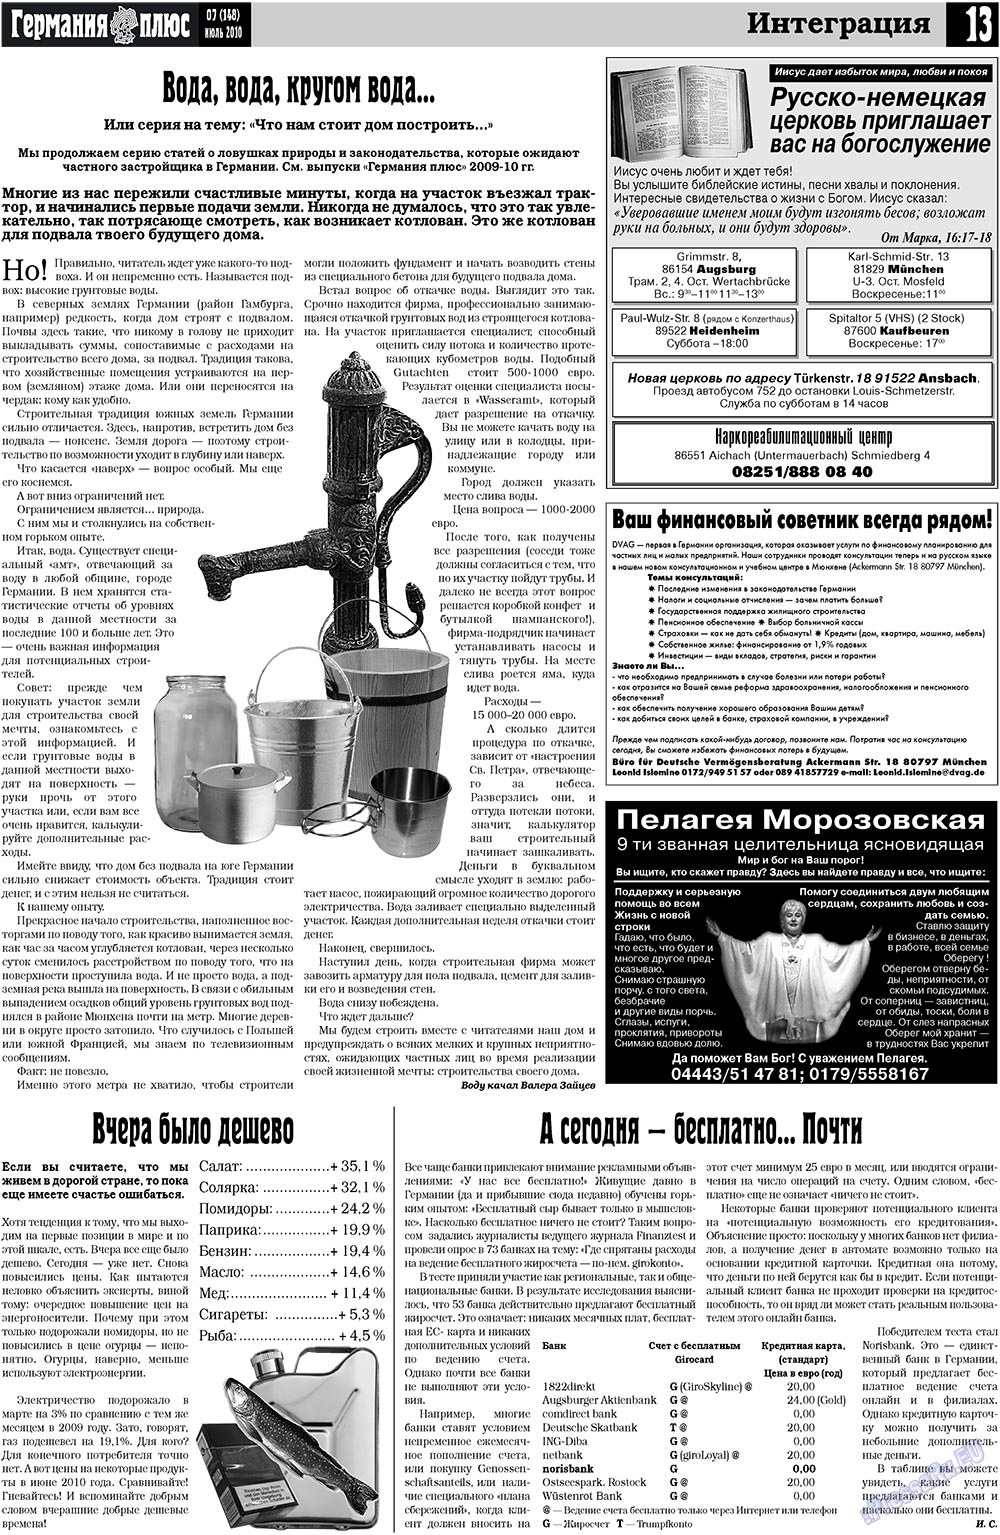 Германия плюс (газета). 2010 год, номер 7, стр. 13